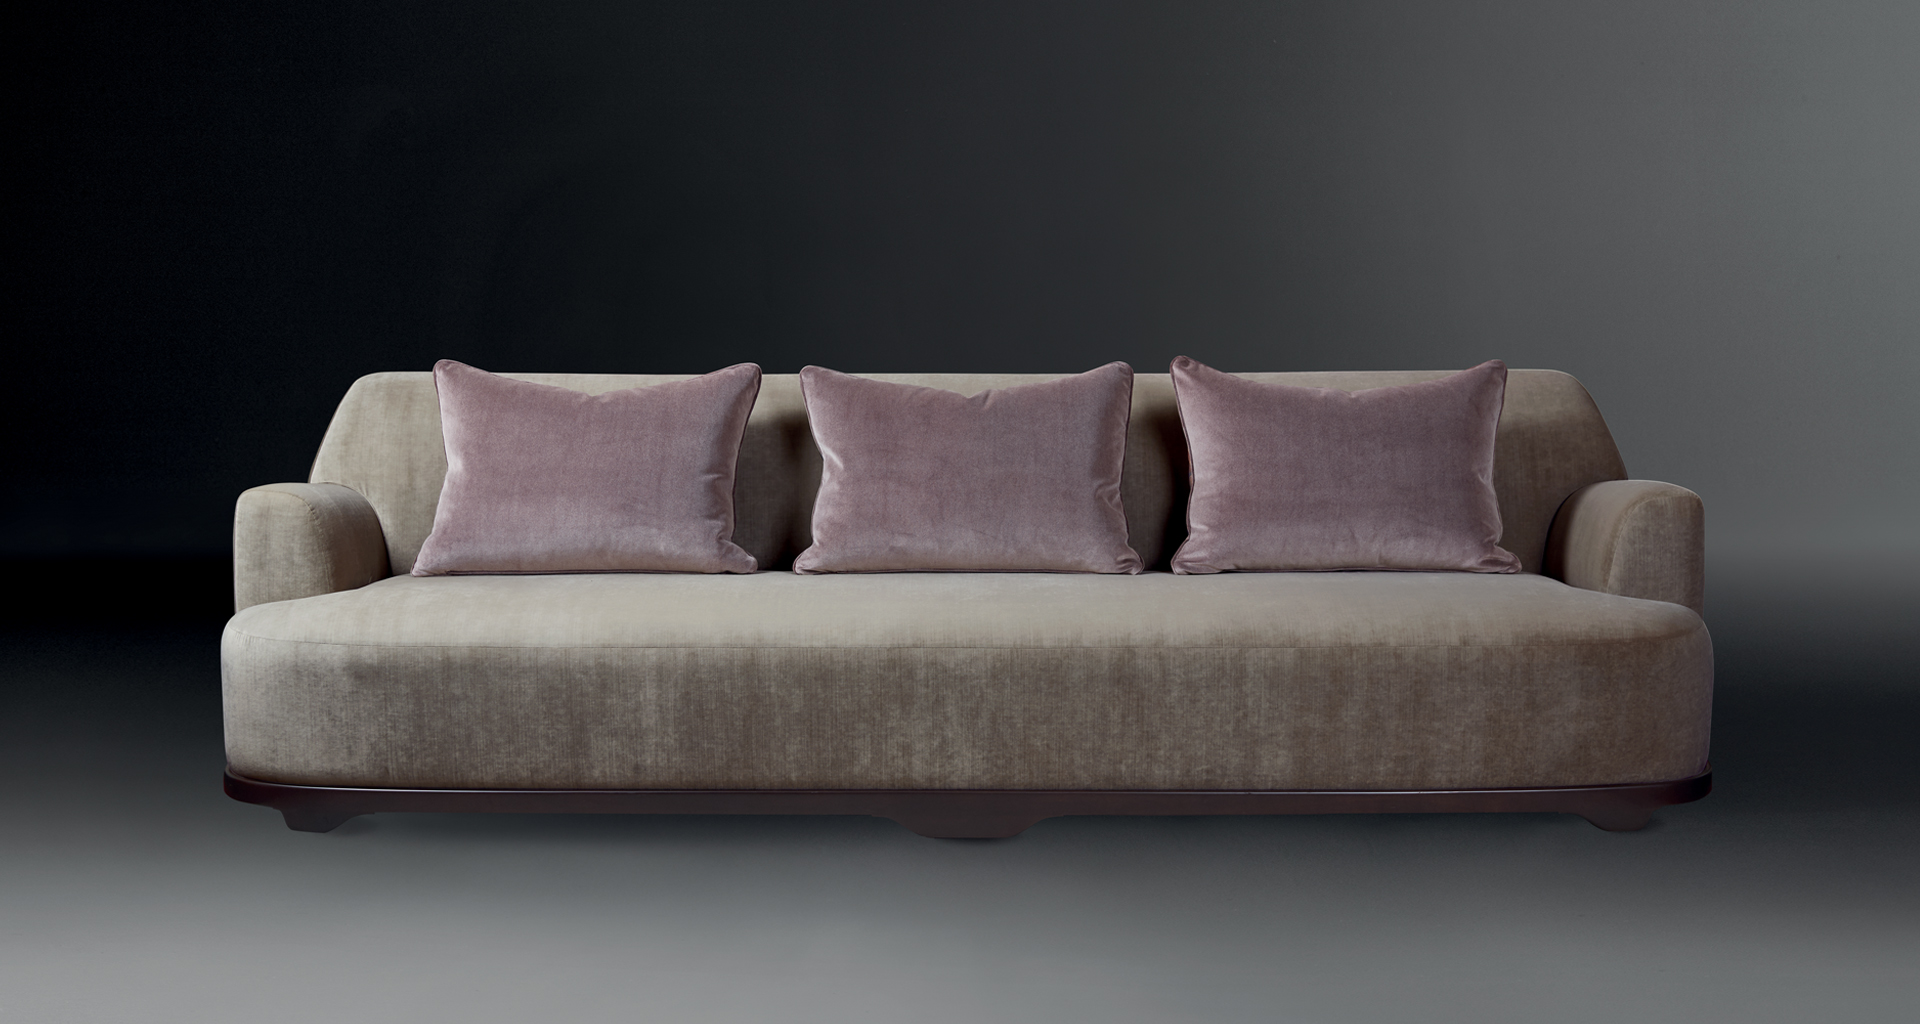 Dorian è un divano in legno rivestito in tessuto o pelle personalizzabile in dimensioni e forma, del catalogo di Promemoria | Promemoria